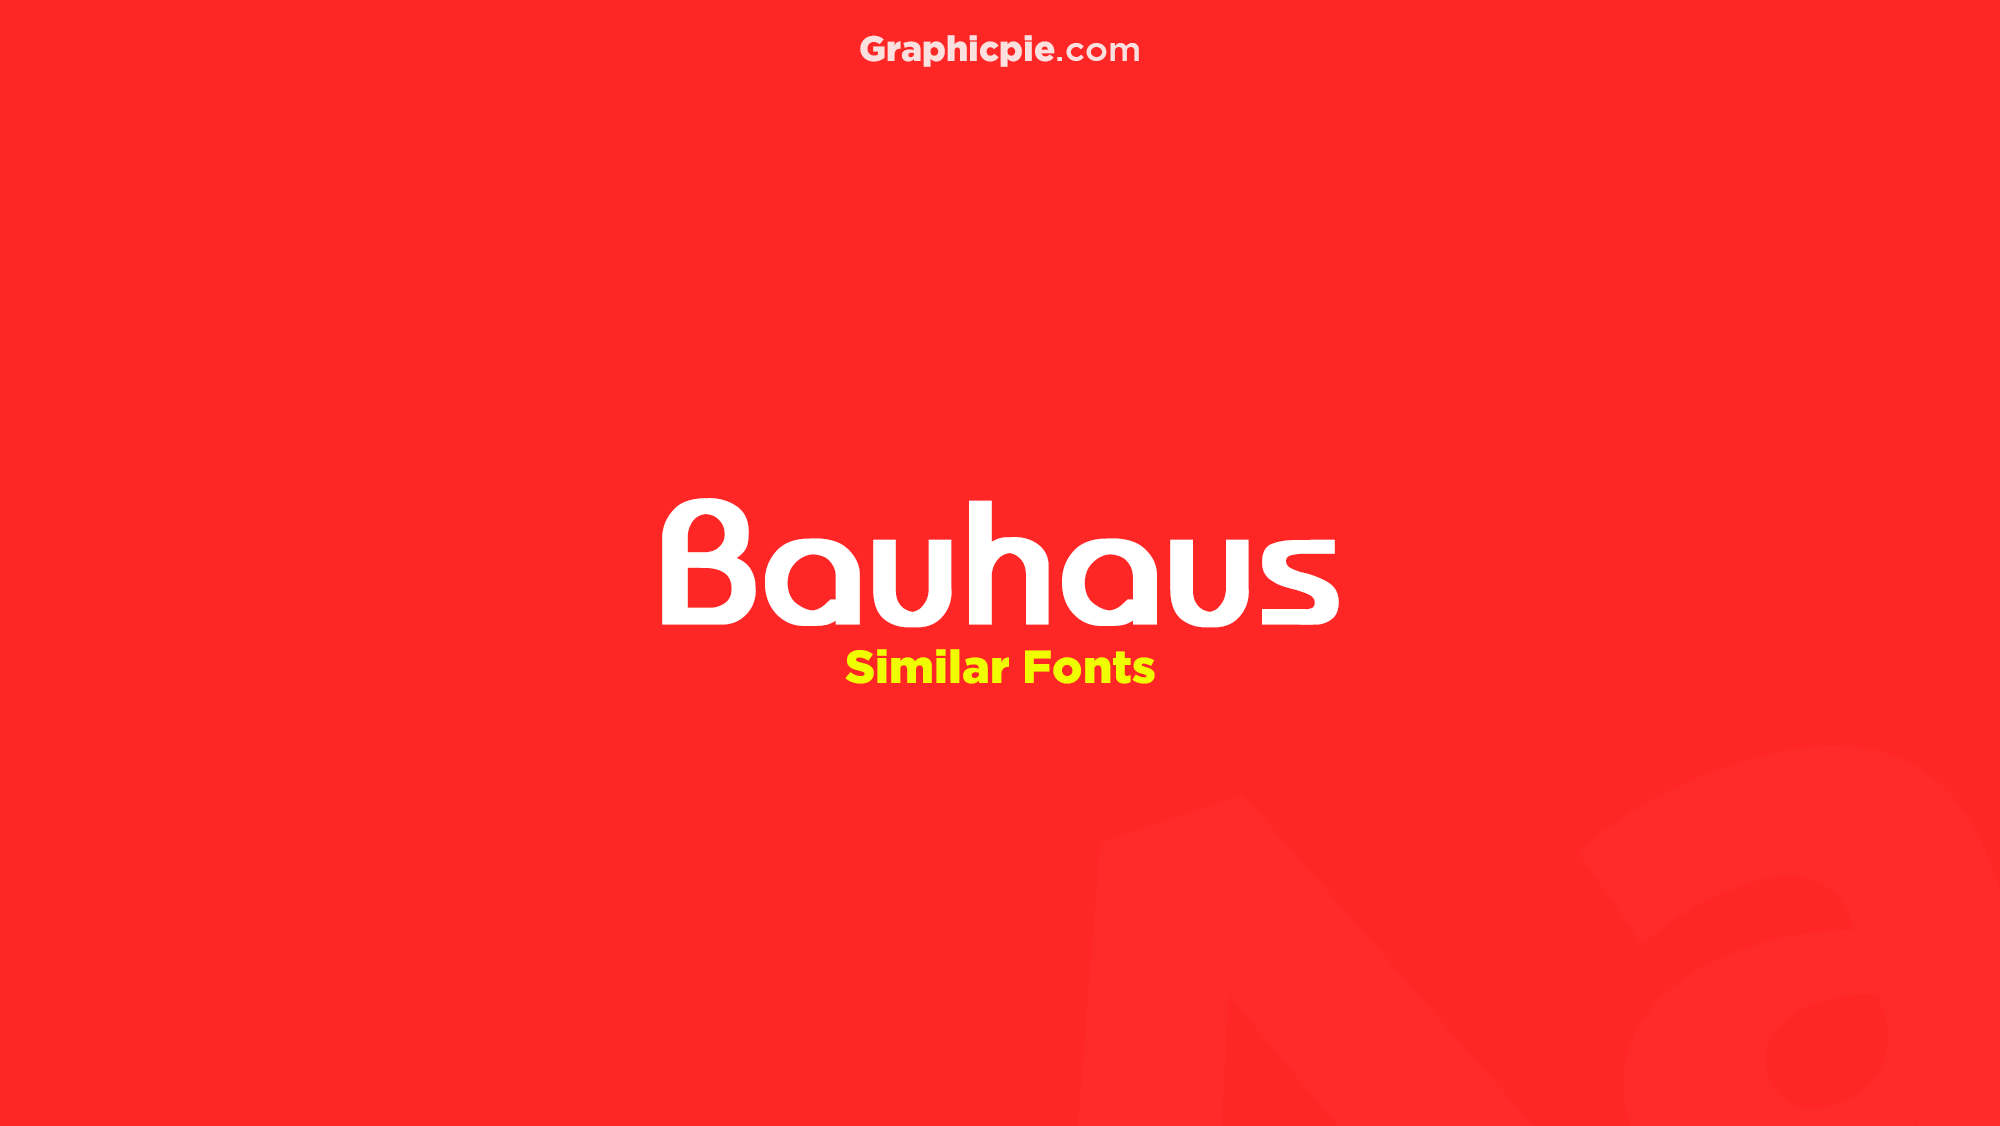 Bauhaus Similar Fonts & Free Alternatives - Graphic Pie